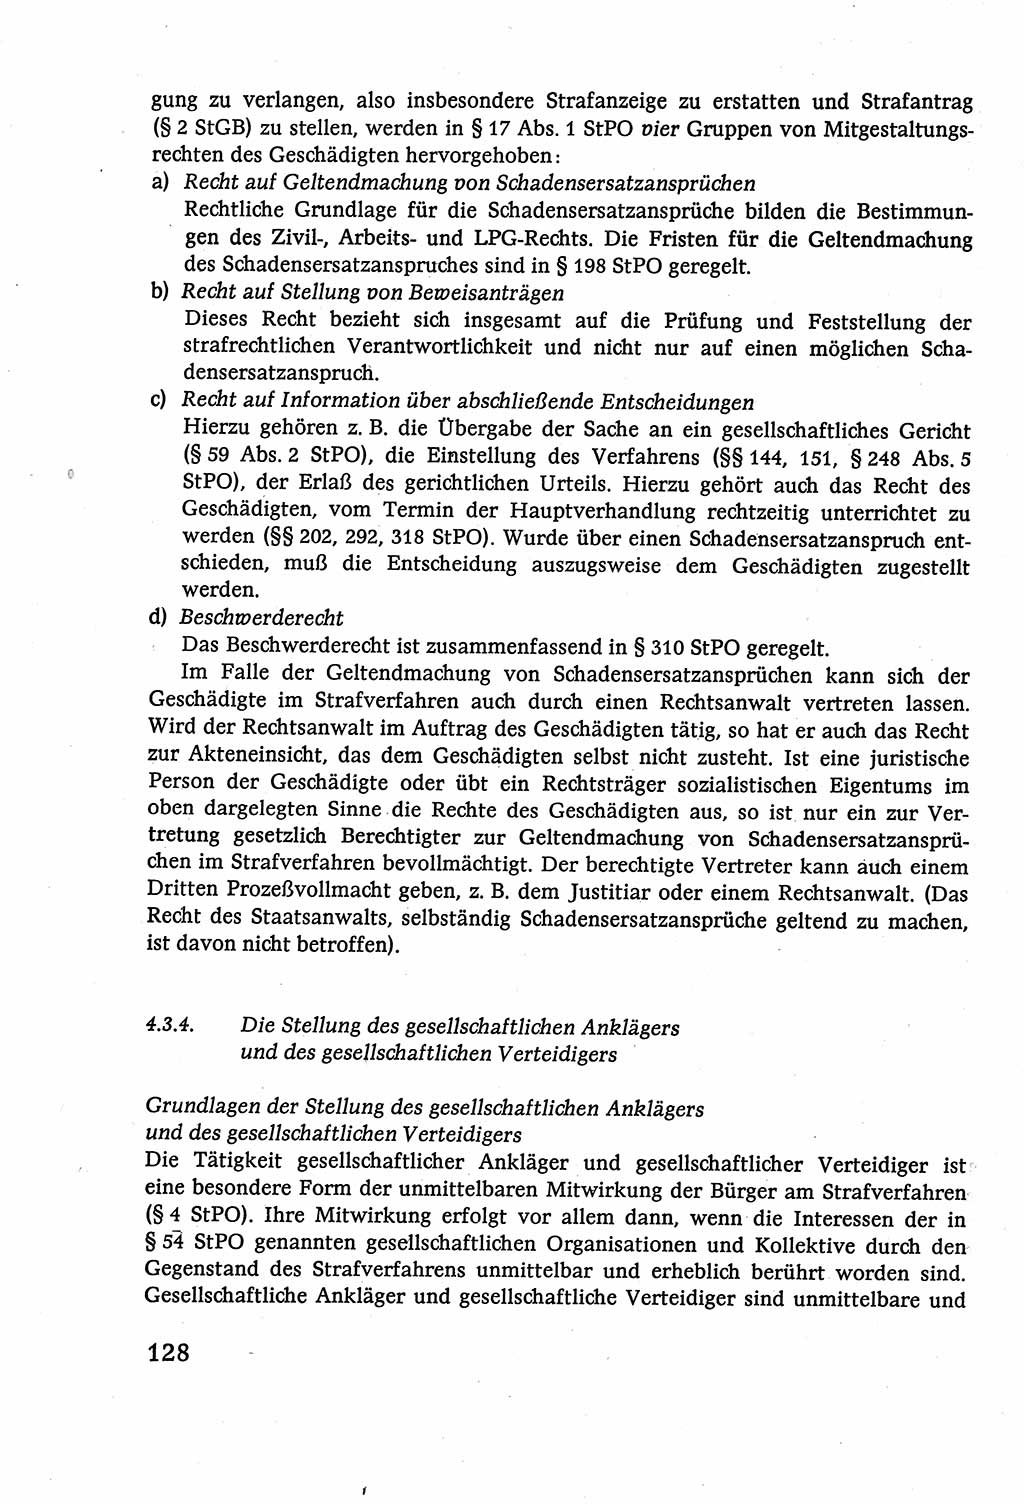 Strafverfahrensrecht [Deutsche Demokratische Republik (DDR)], Lehrbuch 1977, Seite 128 (Strafverf.-R. DDR Lb. 1977, S. 128)